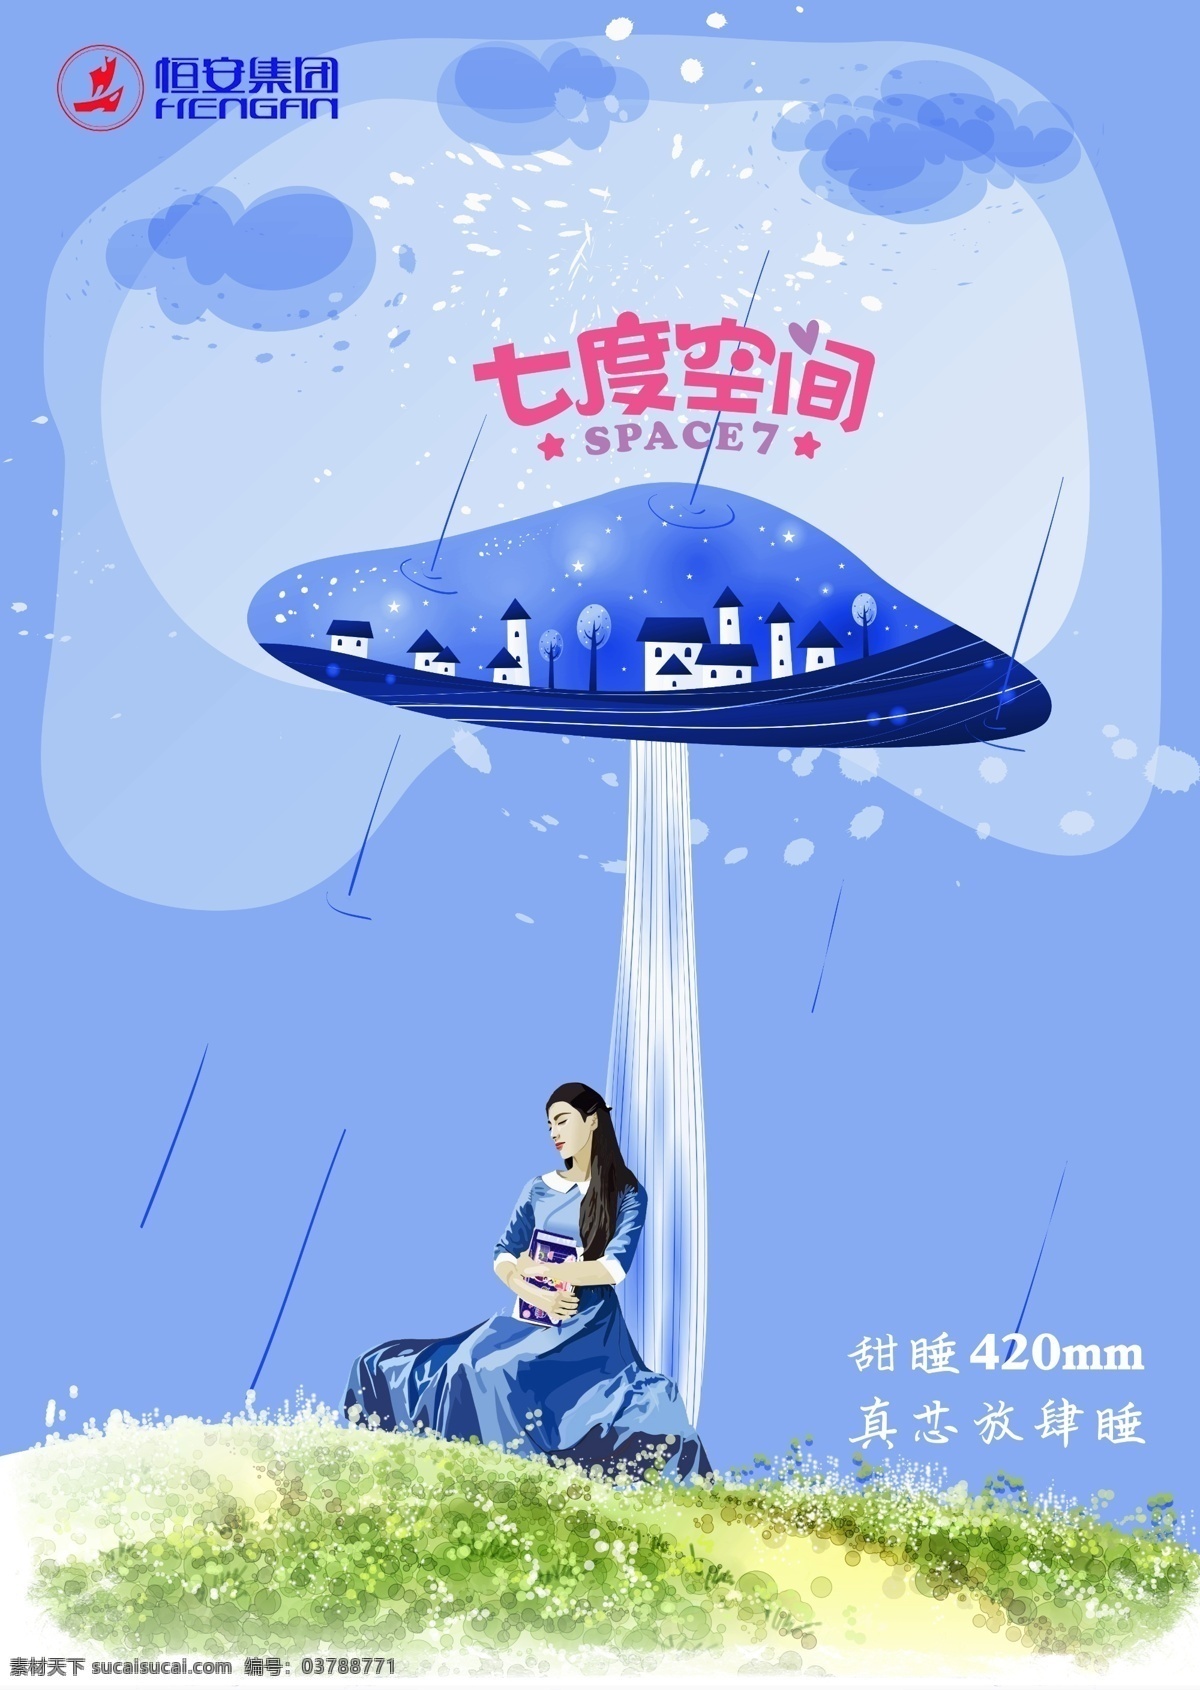 七 度 空间 广告 插画 蓝色 蘑菇 平面 七度空间 海报